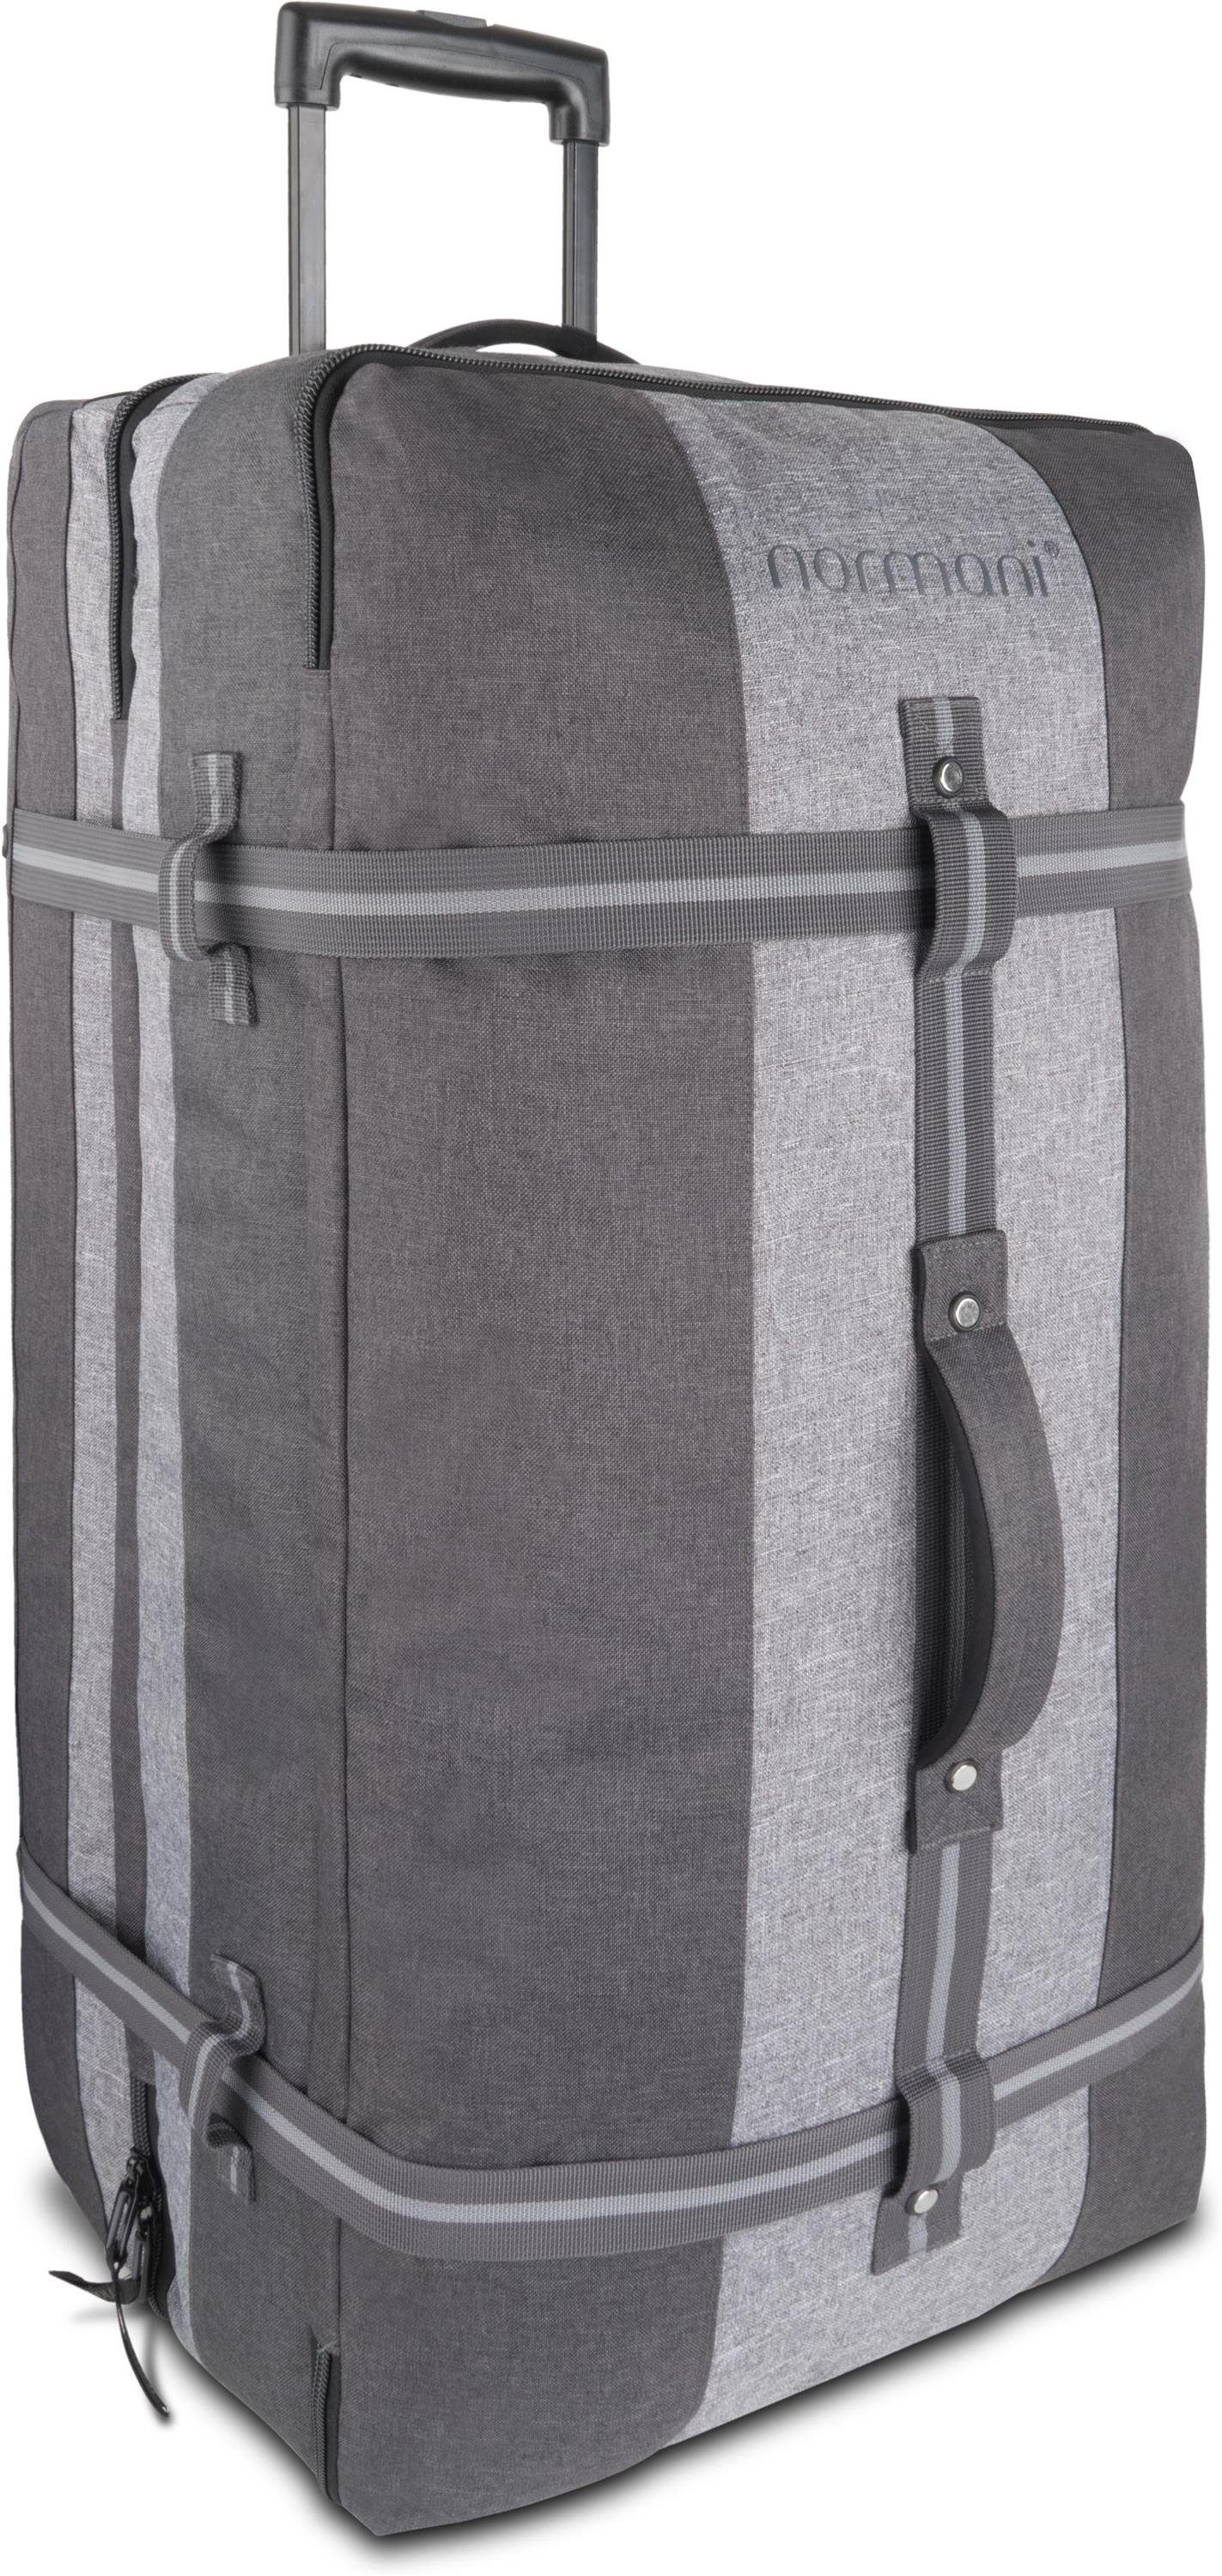 normani Reisetasche Reisetasche 125 L mit Dunkelgrau/Grau 4 Aurori Kleidertaschen mit Große Rollen Reisetasche 125